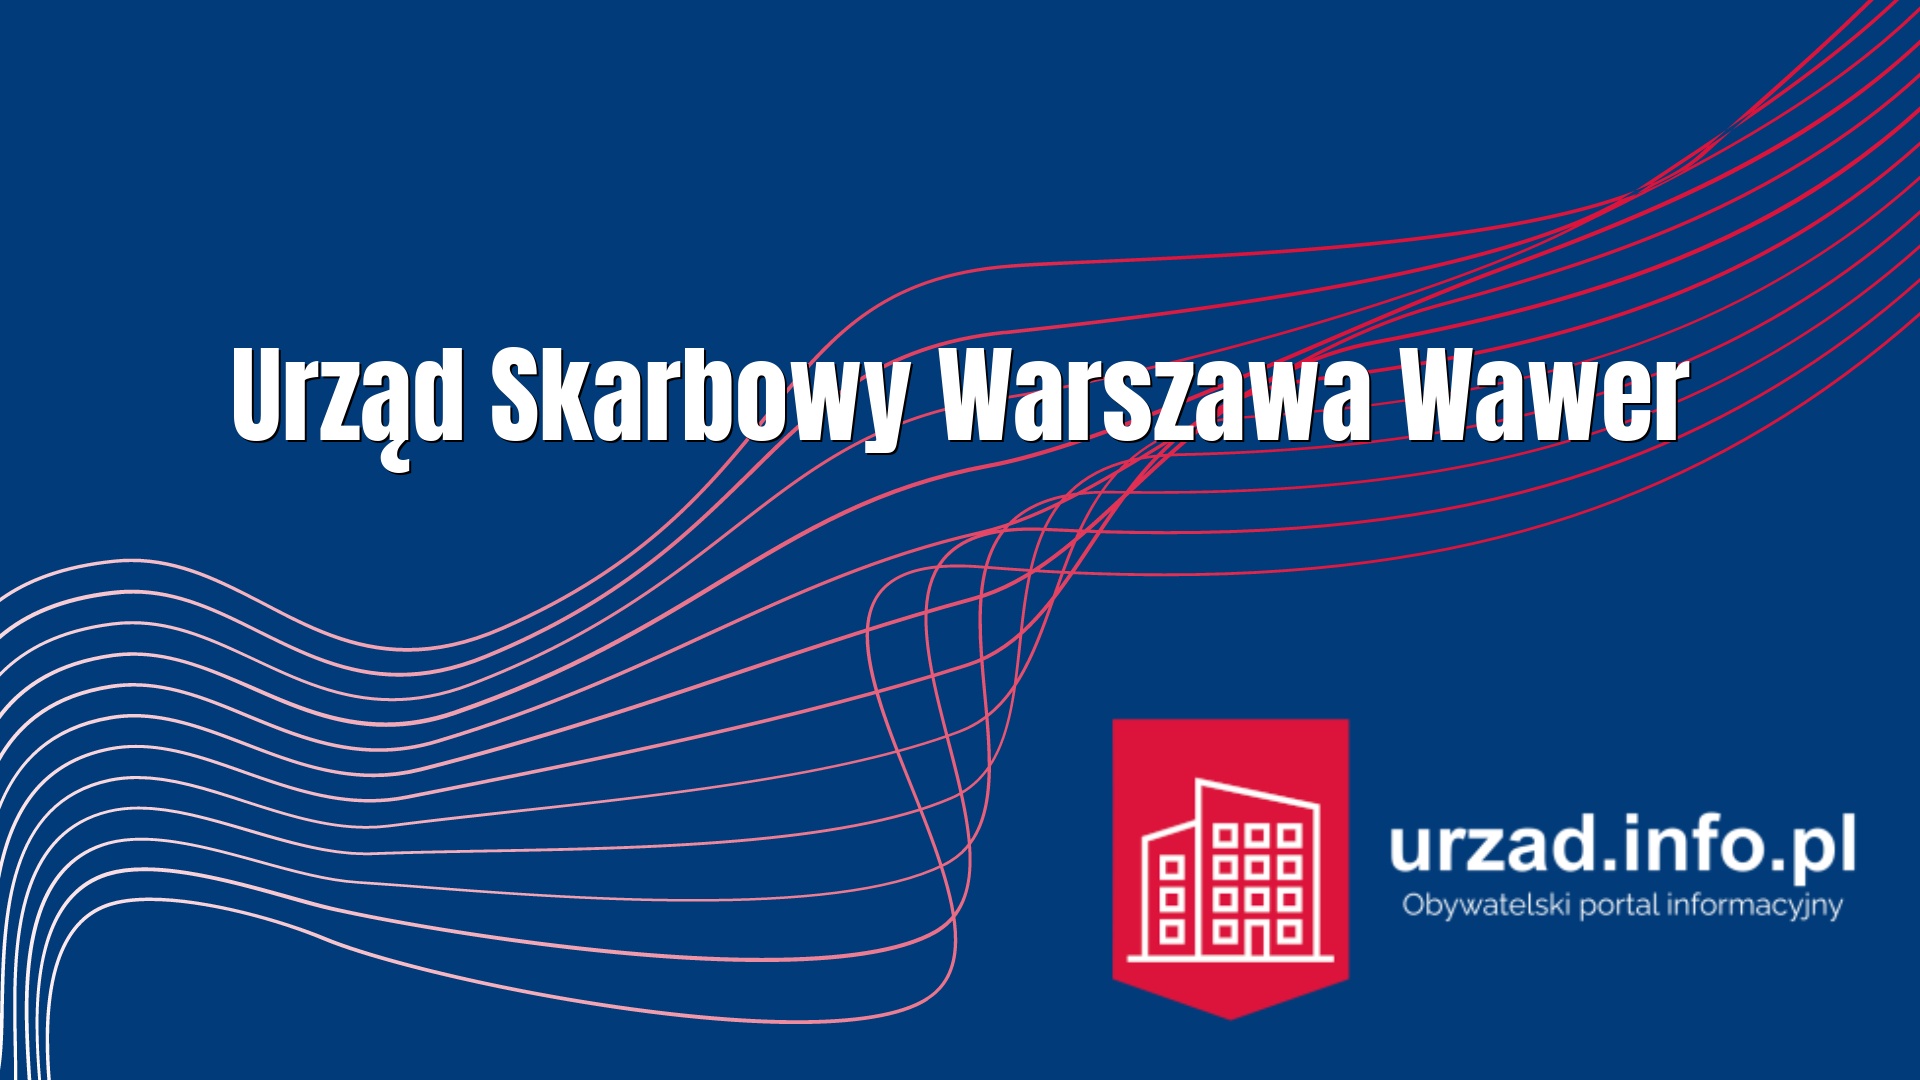 Urząd Skarbowy Warszawa-Wawer